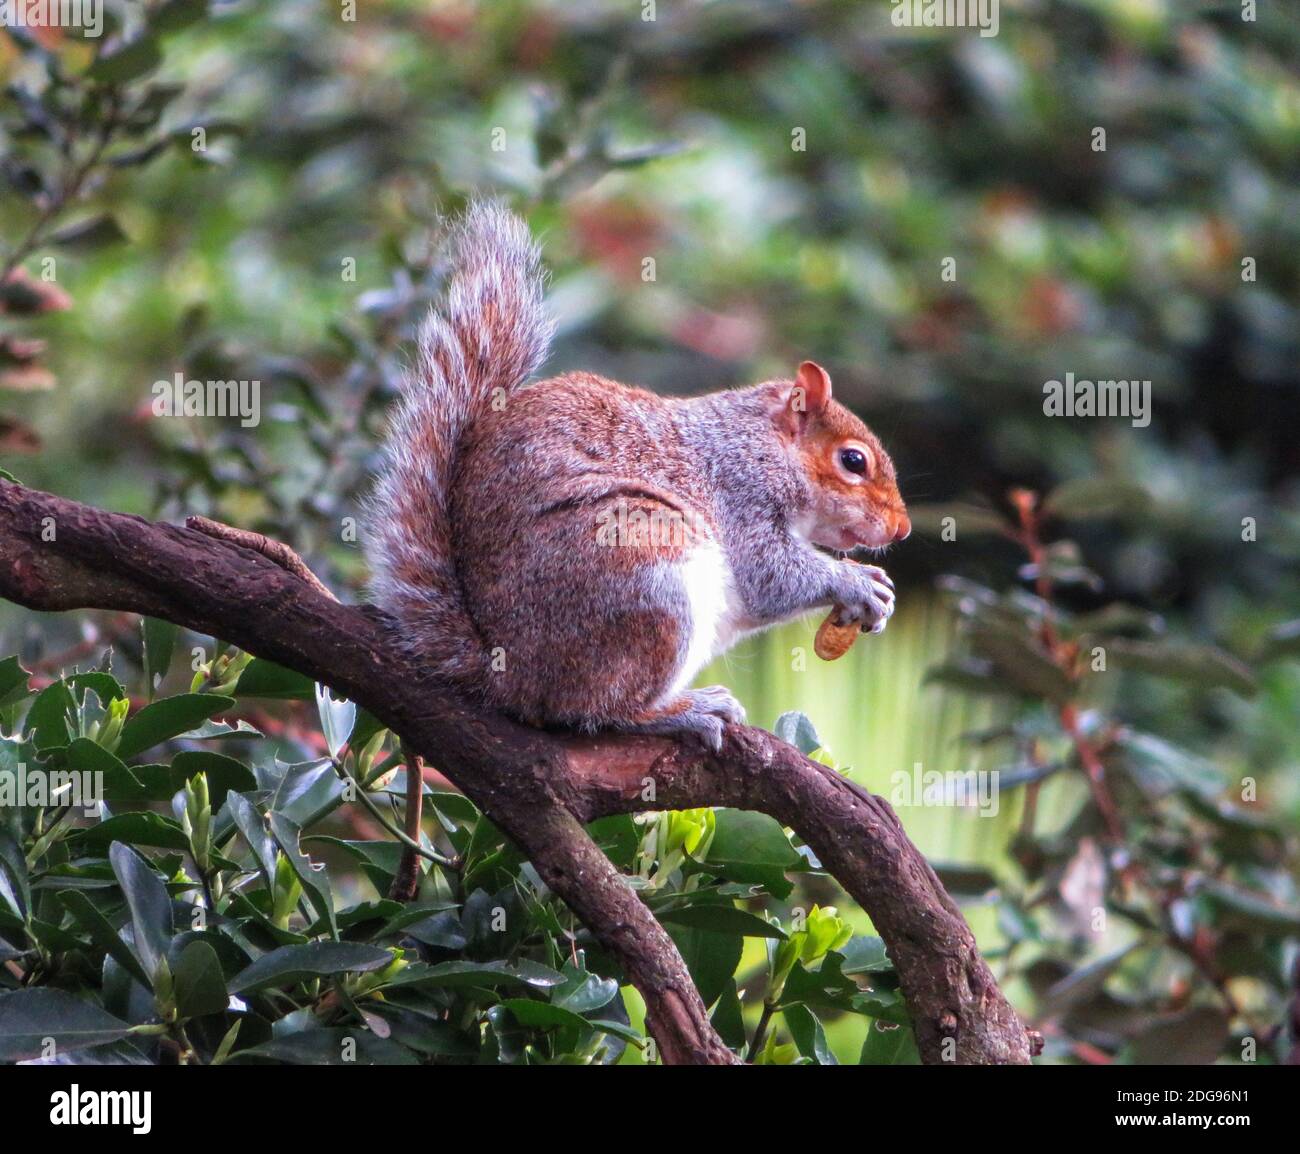 Un côté sur la vue d'un écureuil gris moelleux perché sur une branche d'arbre contre un fond de feuilles vert profond, encombrant un gros écrou dans ses petites mains. Banque D'Images